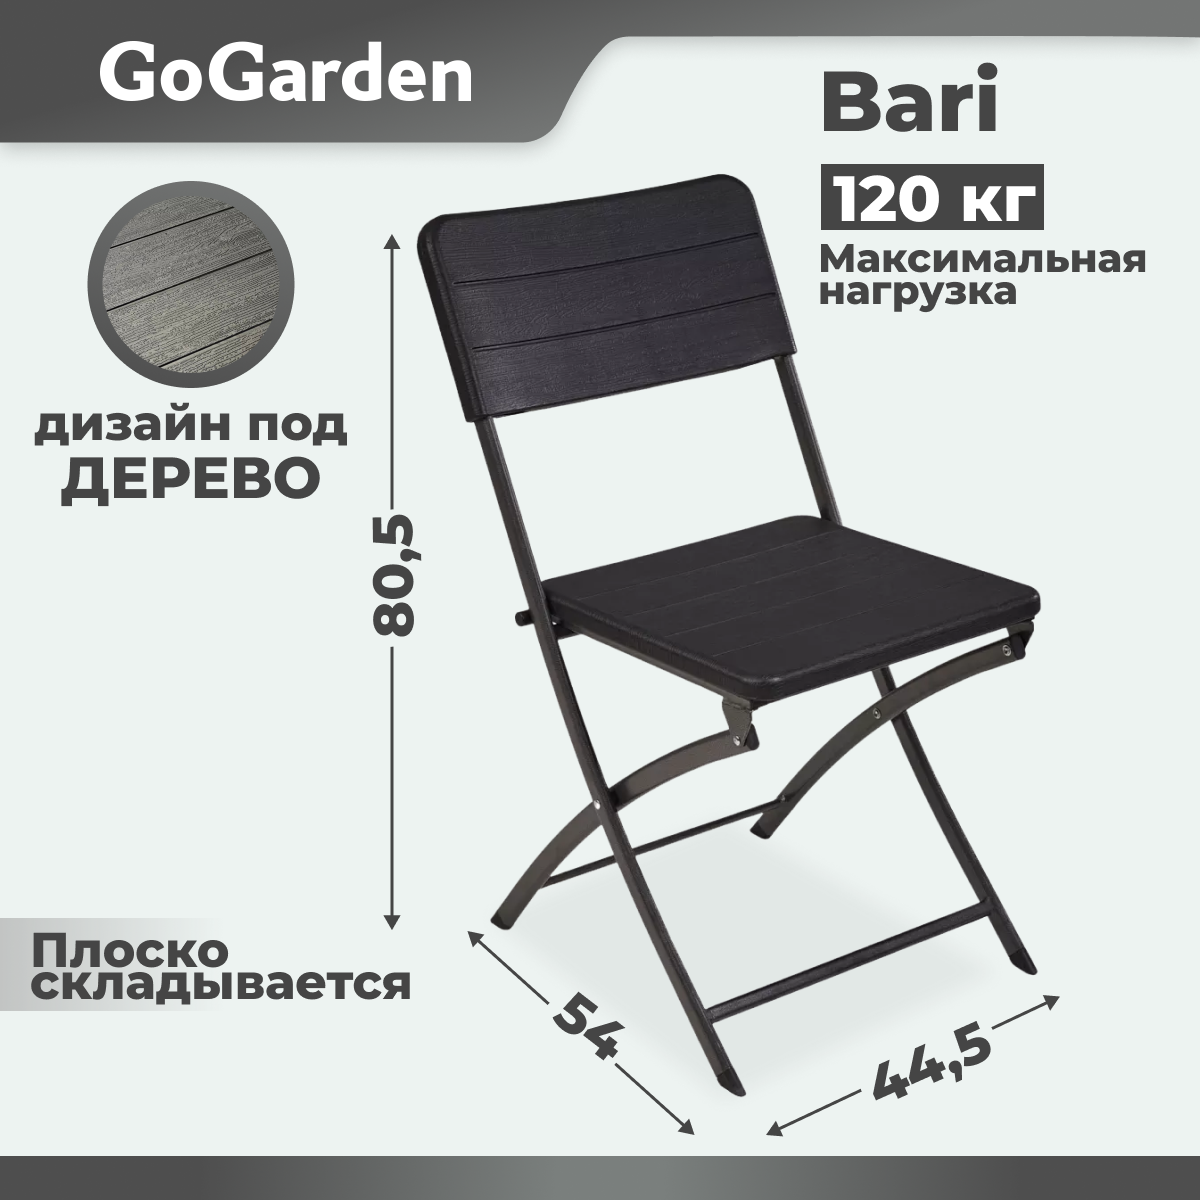 Стул Go Garden Bari